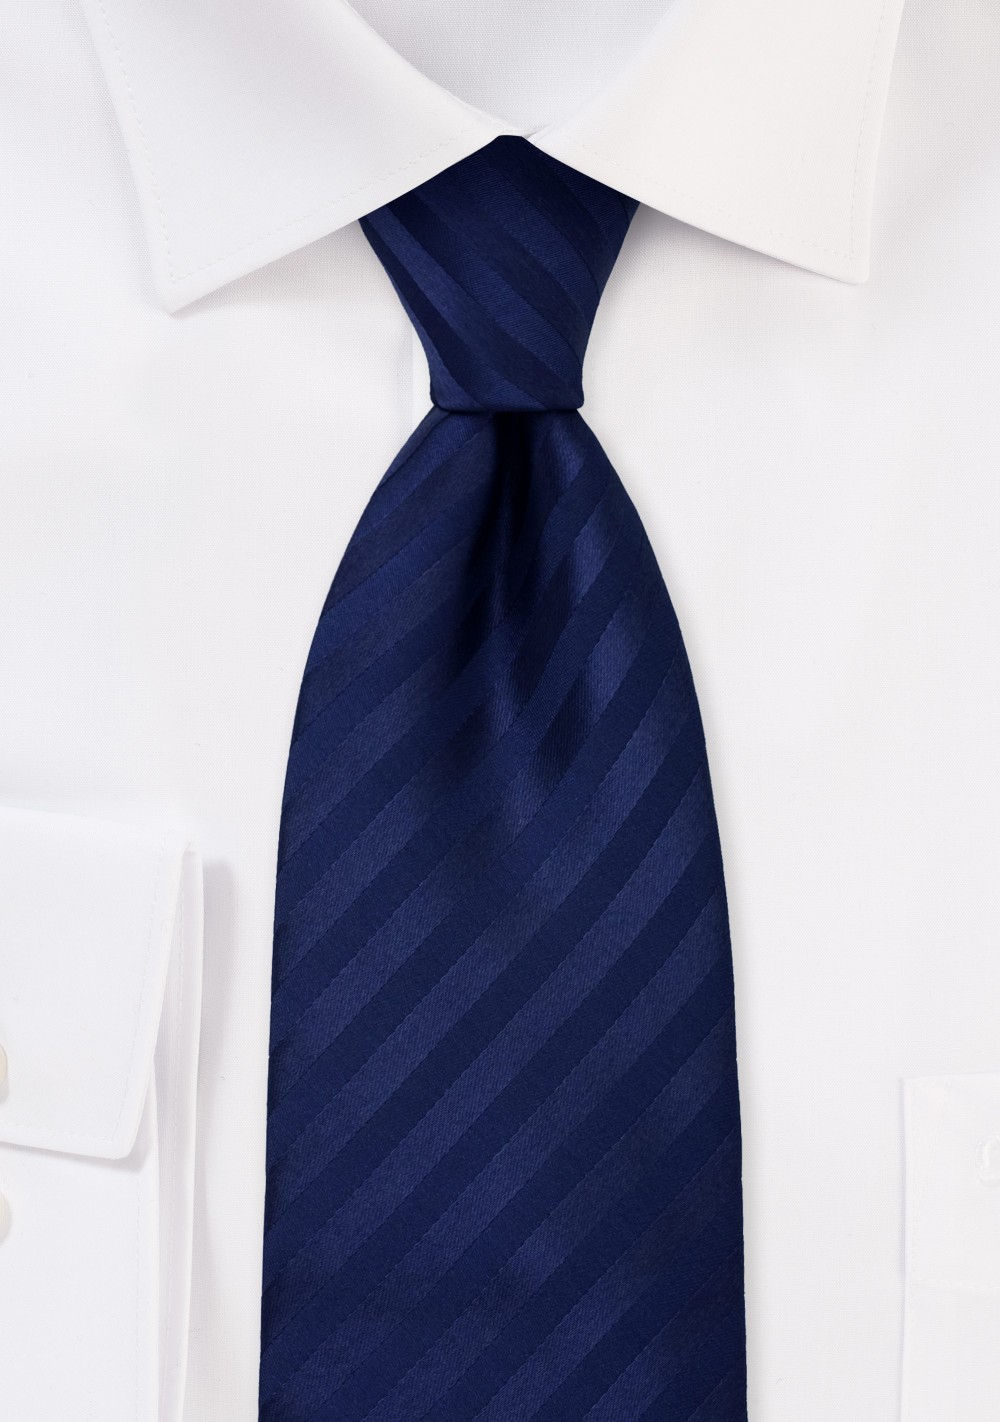 Solid Dark Blue Striped Tie for Kids